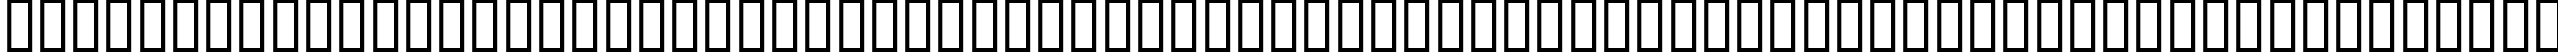 Пример написания английского алфавита шрифтом ARROW FONTS